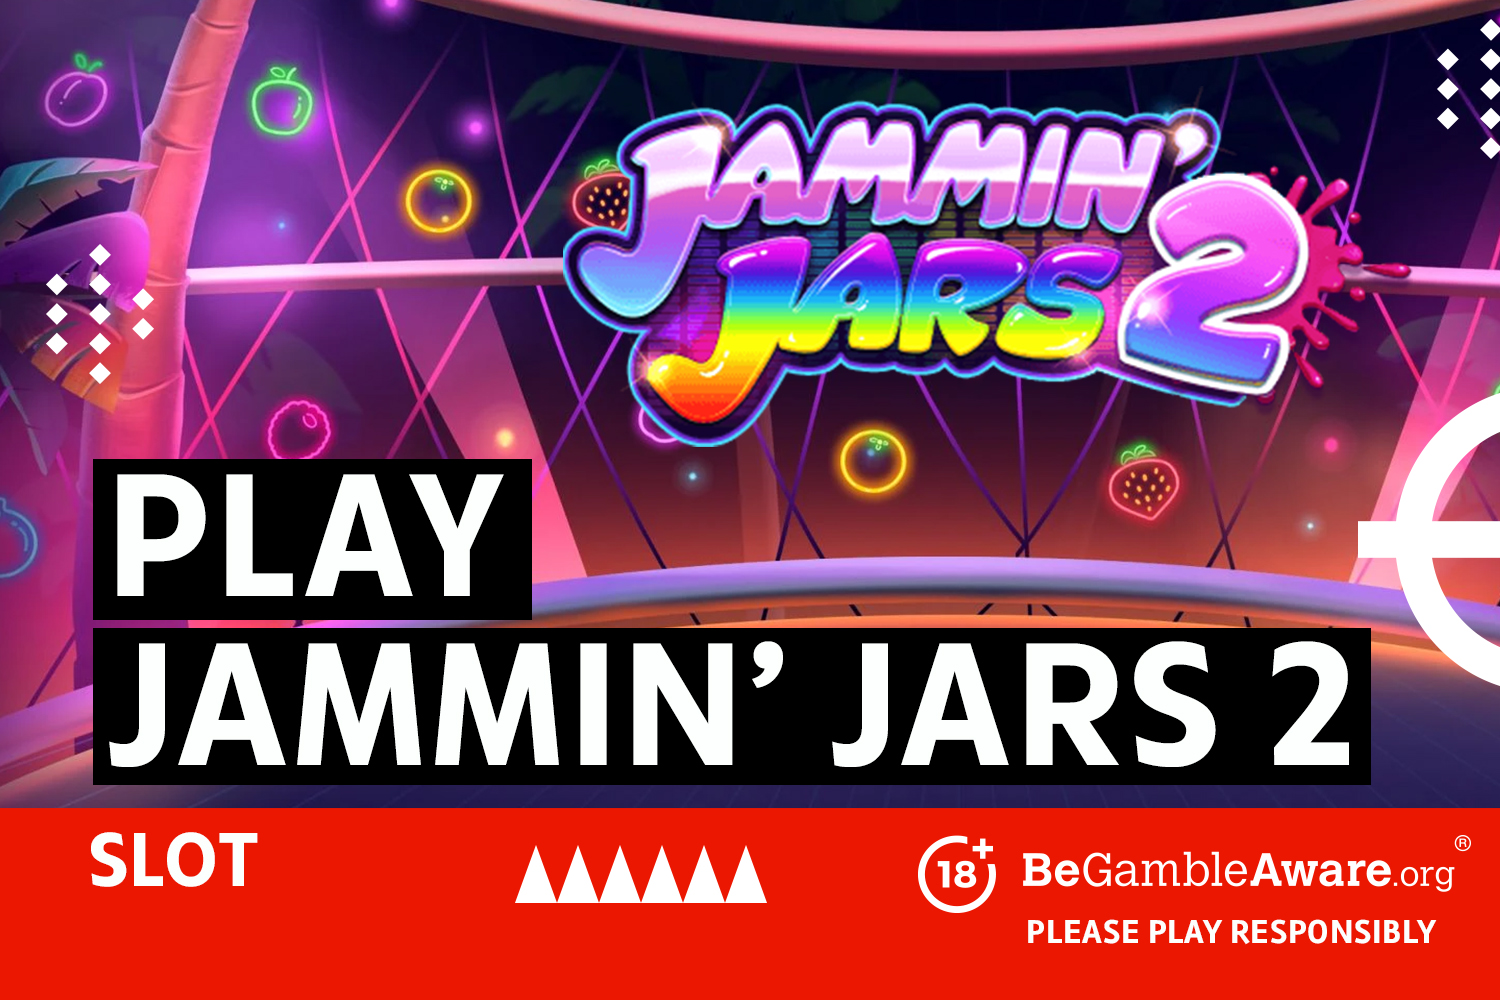 Spielen Sie den Jammin' Jars 2-Slot.  18+ BeGambleAware.org – Bitte spielen Sie verantwortungsbewusst.